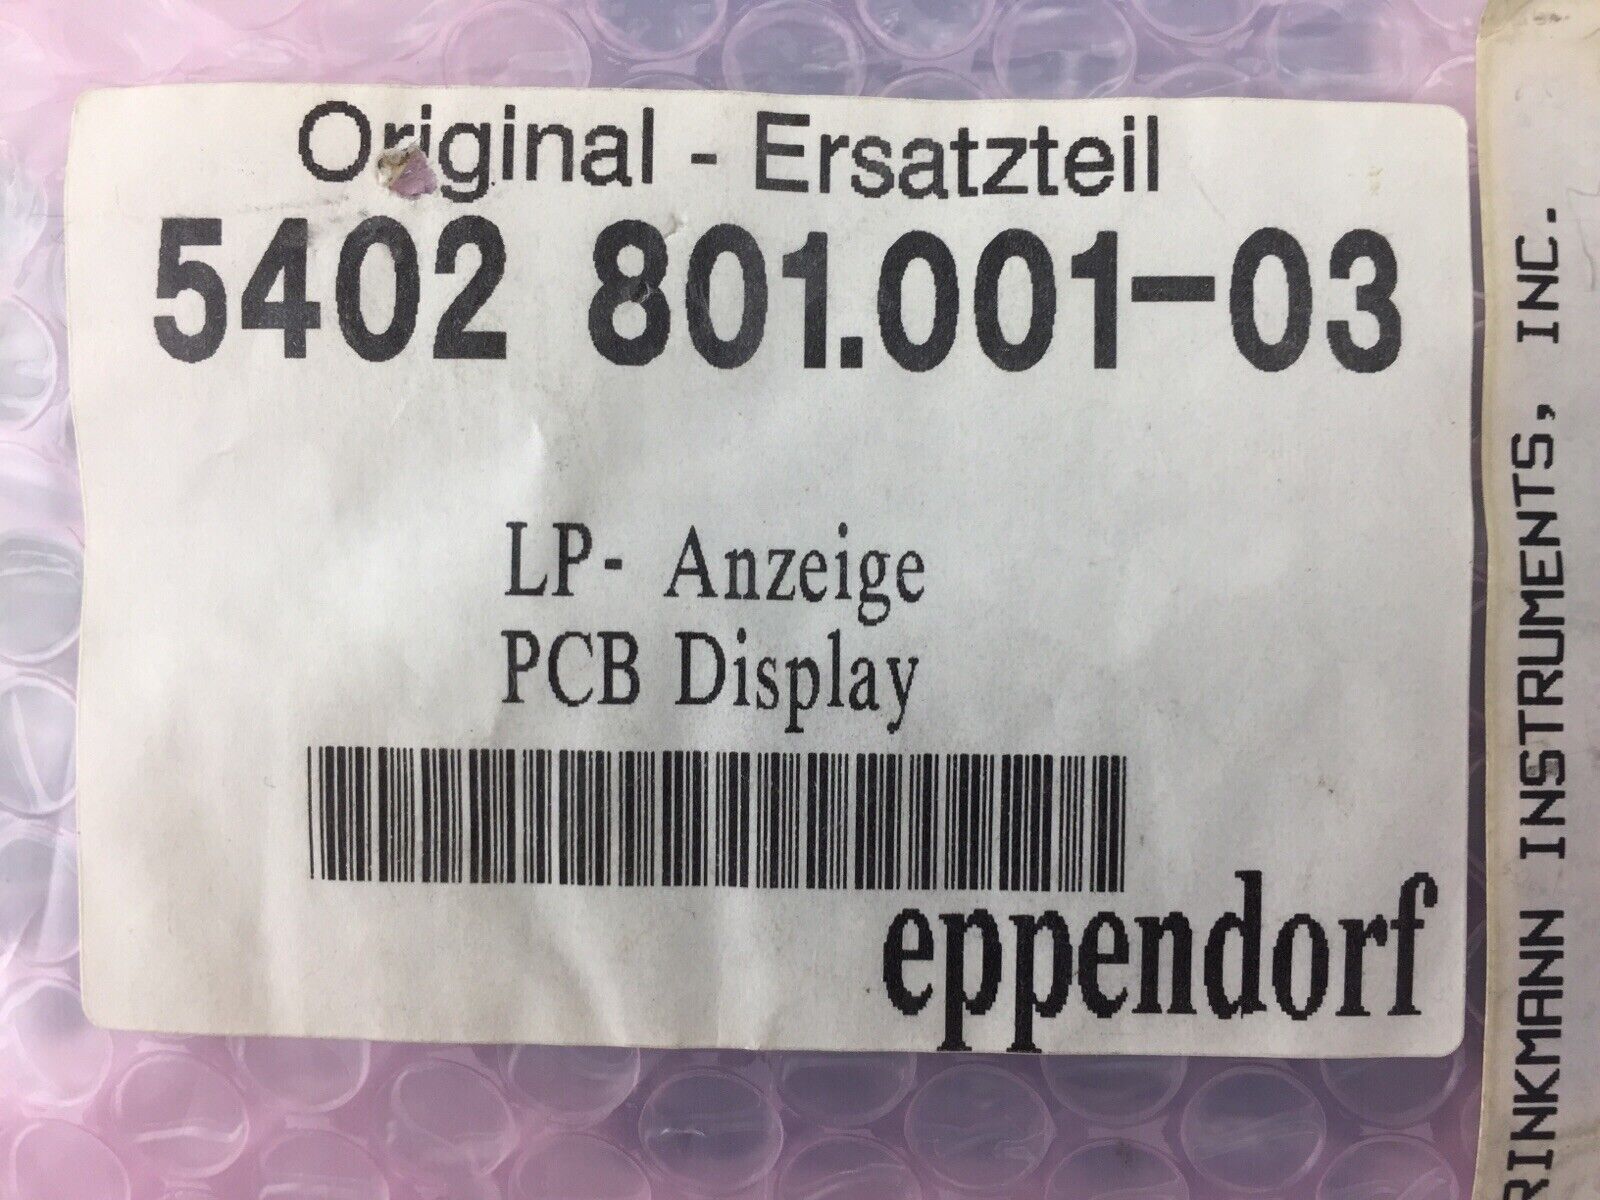 Ersatzteil LP - Aneige PCB Display - Eppendorf - 5402 801.001-03 - Brinkmann